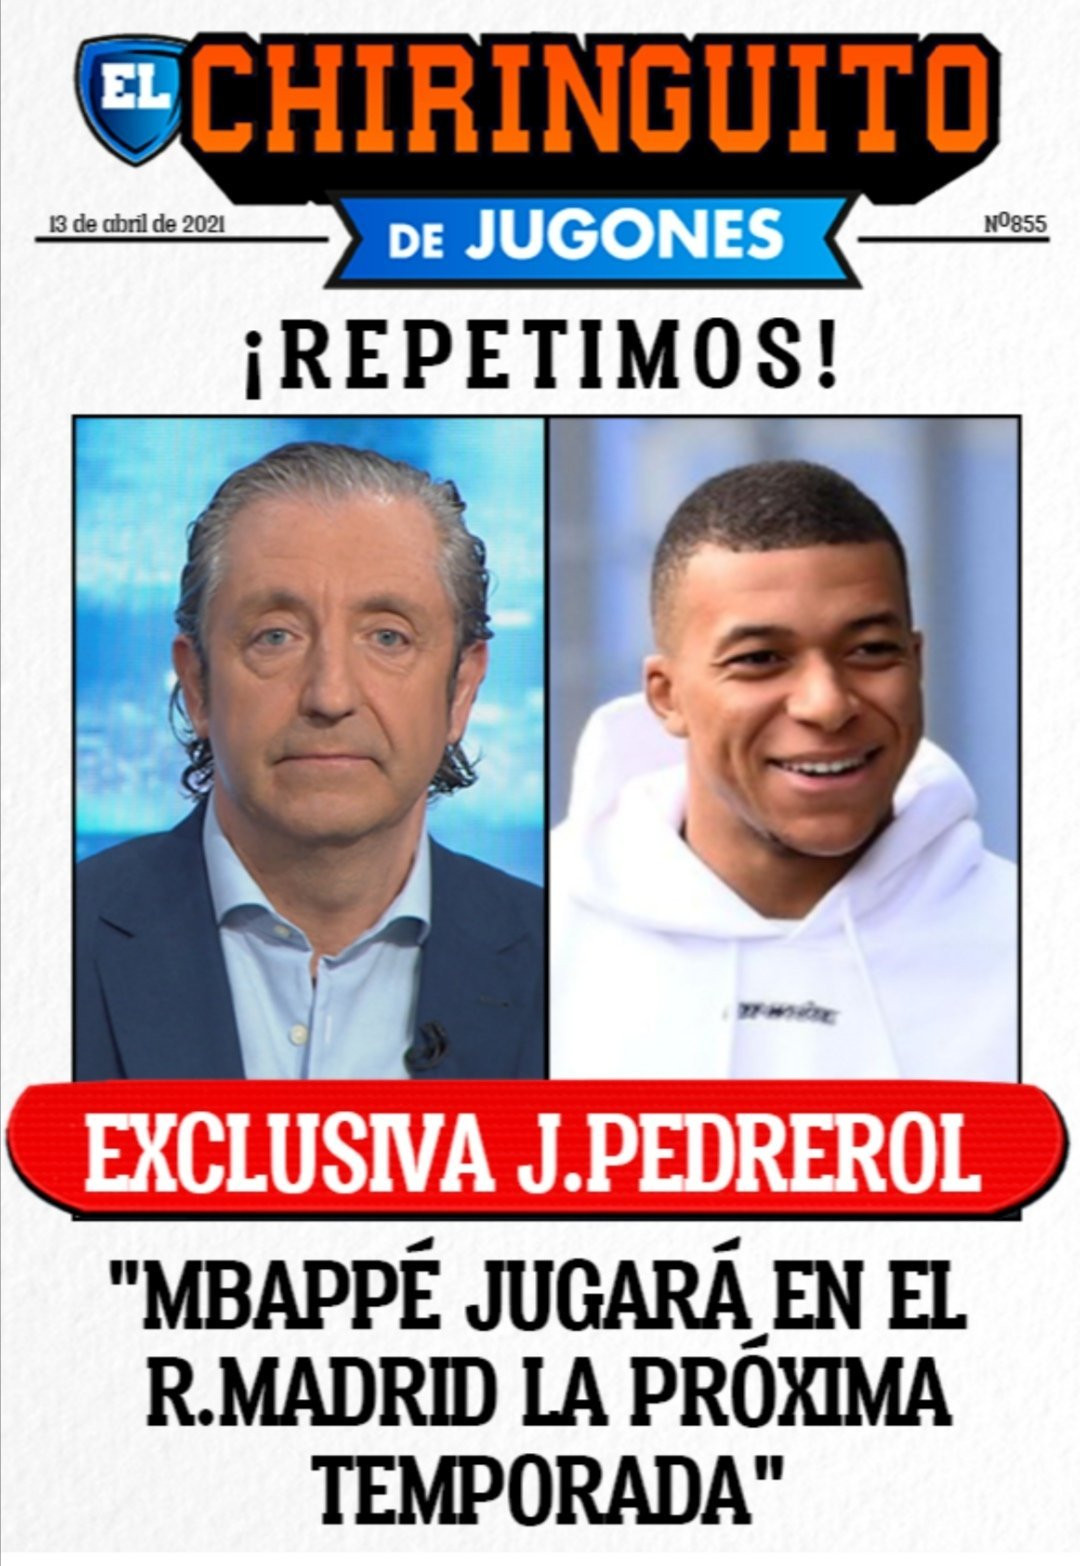 El Chiringuito TV avanza en exclusiva el fichaje de Kylan Mbappé por el Real Madrid / REDES